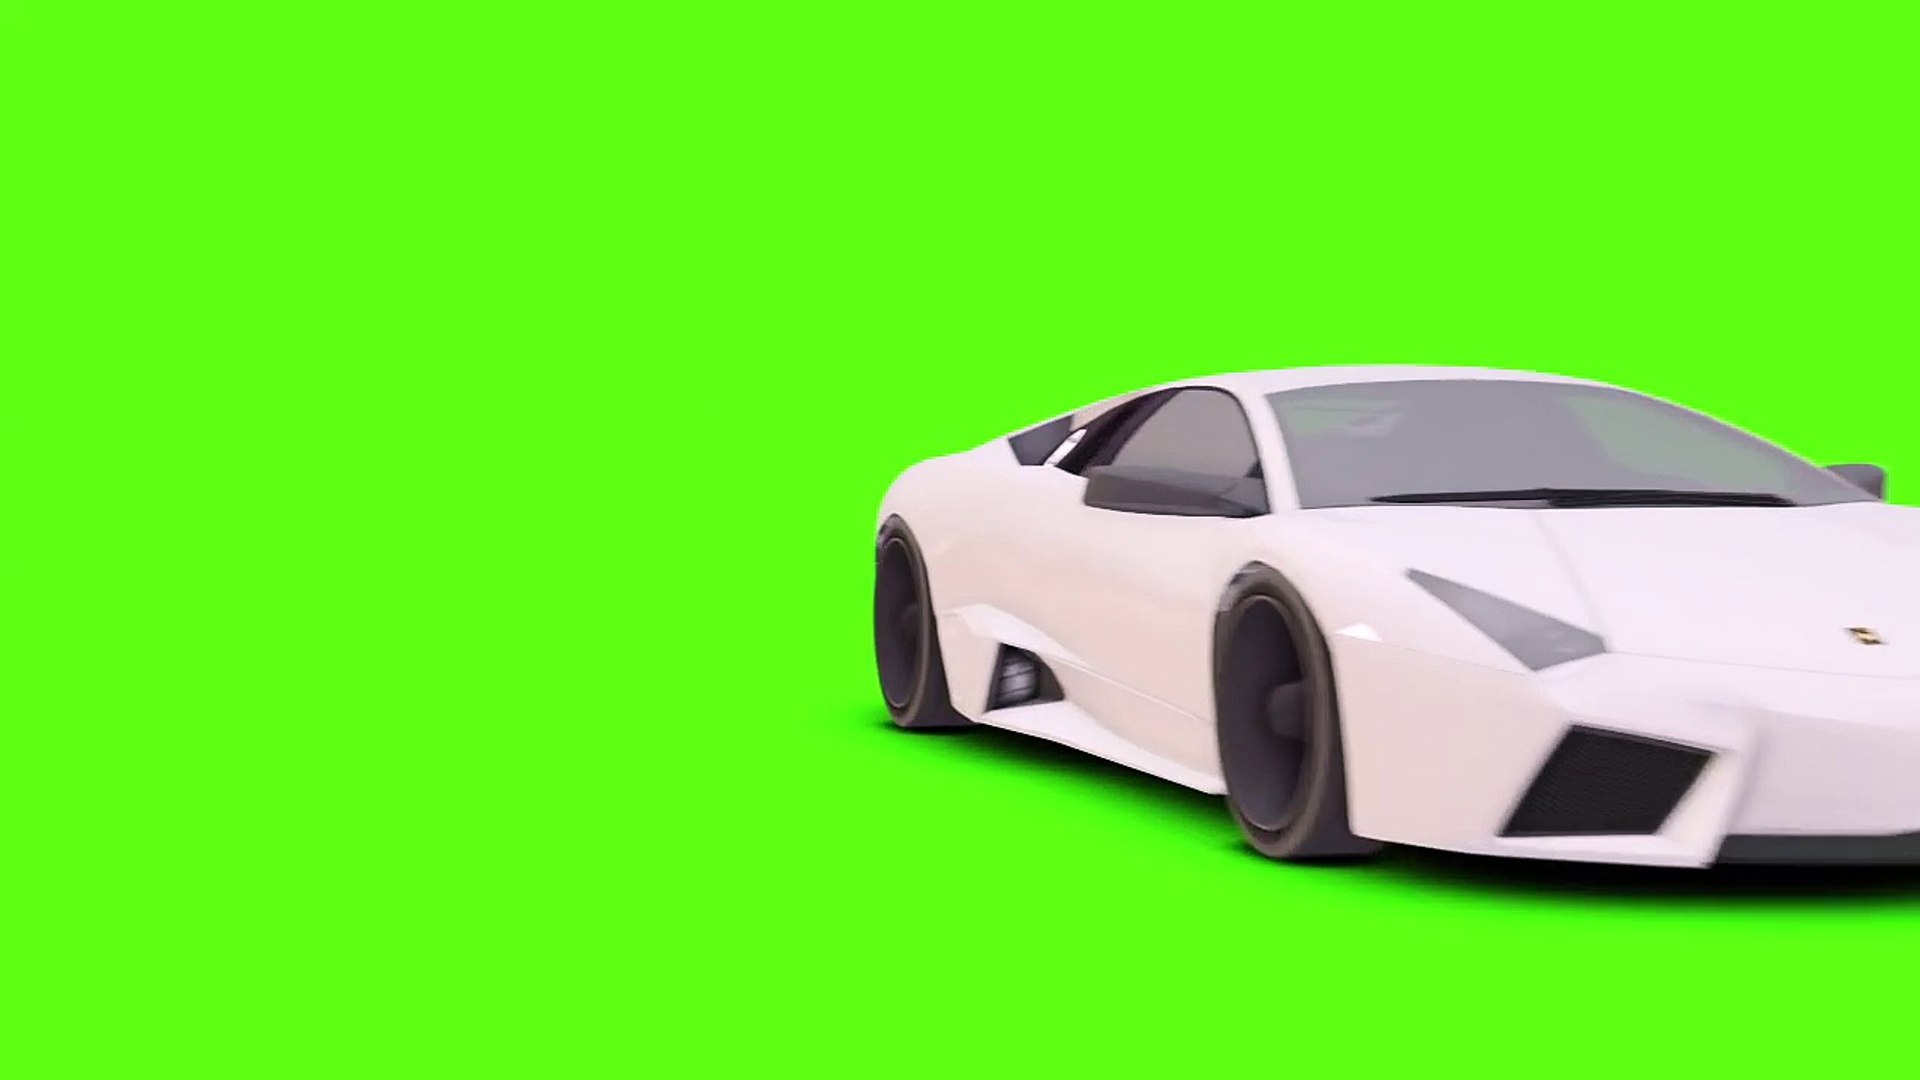 Cảm thấy muốn trải nghiệm những giây phút phấn khích trên đường đua của Lamborghini? Hãy xem video Dailymotion chạy trên màn hình xanh để cảm nhận sự đuổi đánh và vận tốc của chiếc xe đầy mê hoặc này.